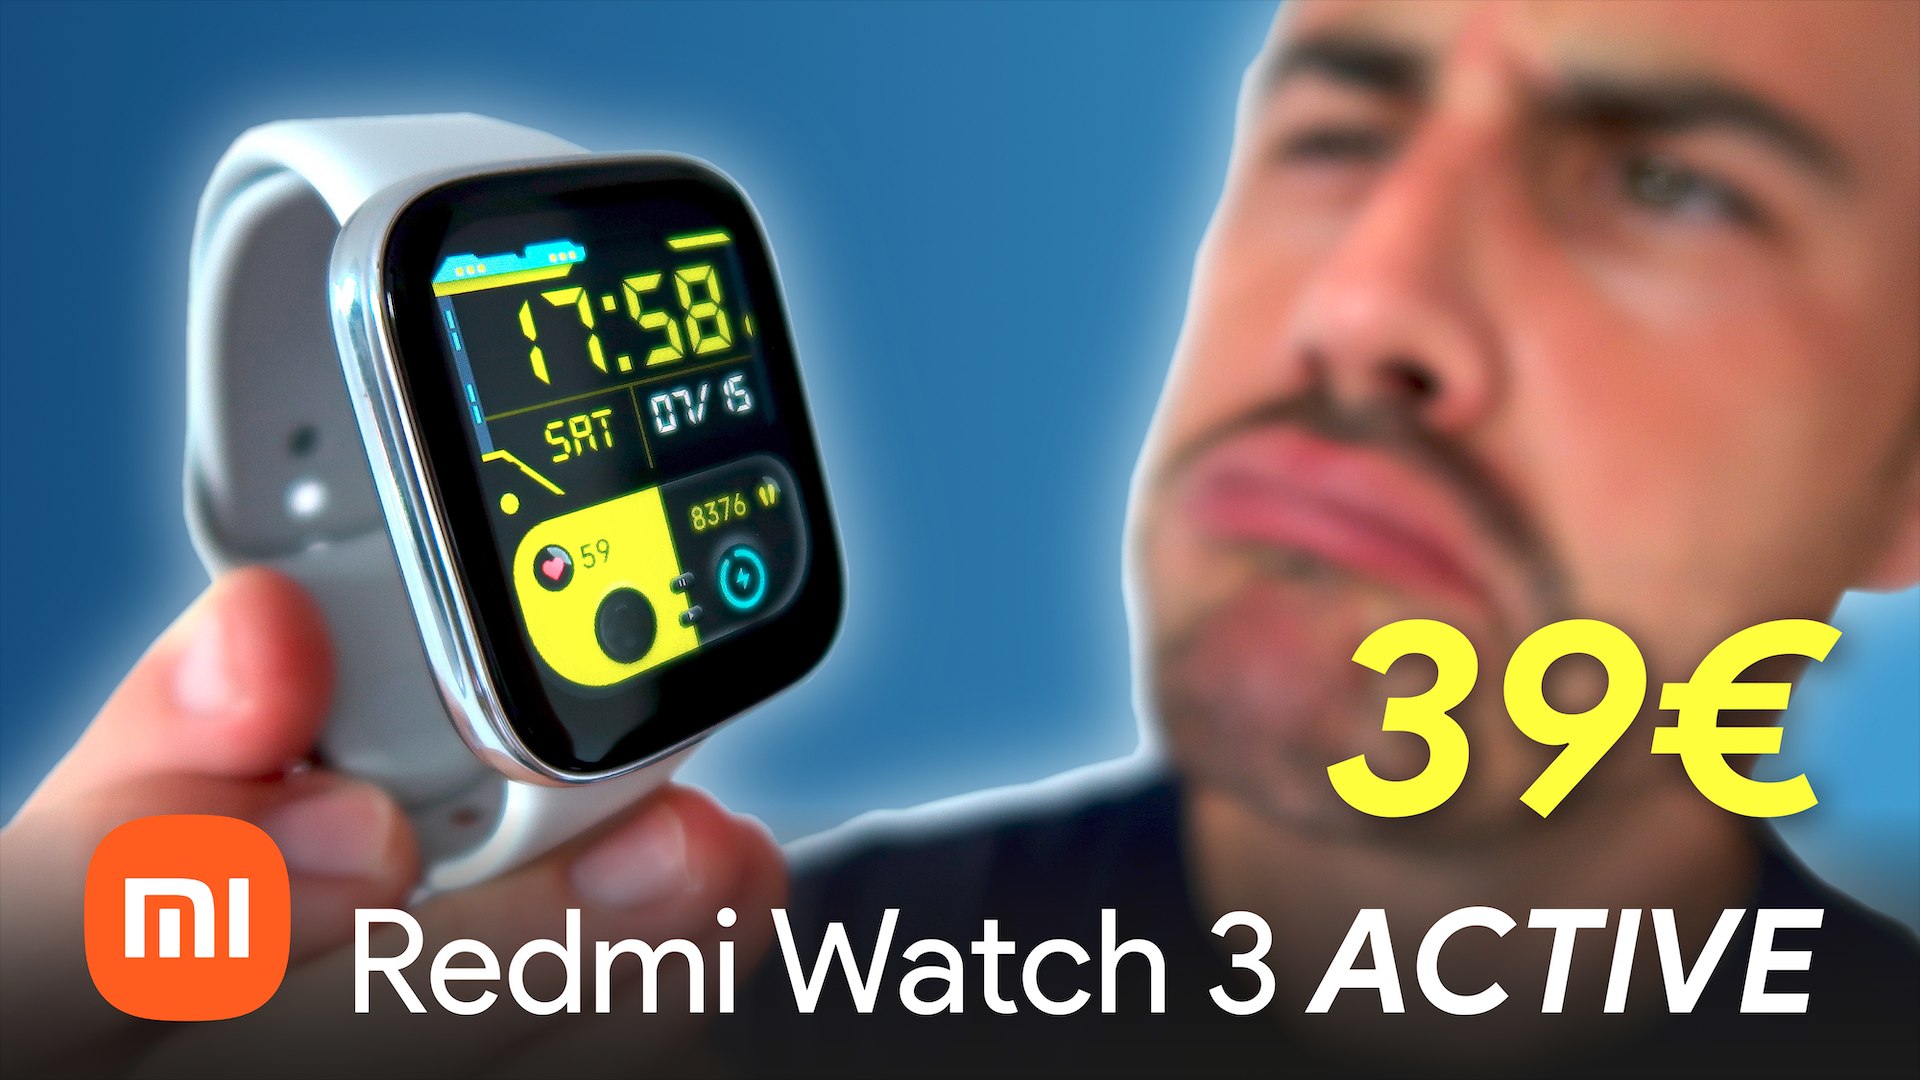 Redmi Watch 3 Active ¡NO SE PUEDE PEDIR MÁS POR MENOS! - Vídeo